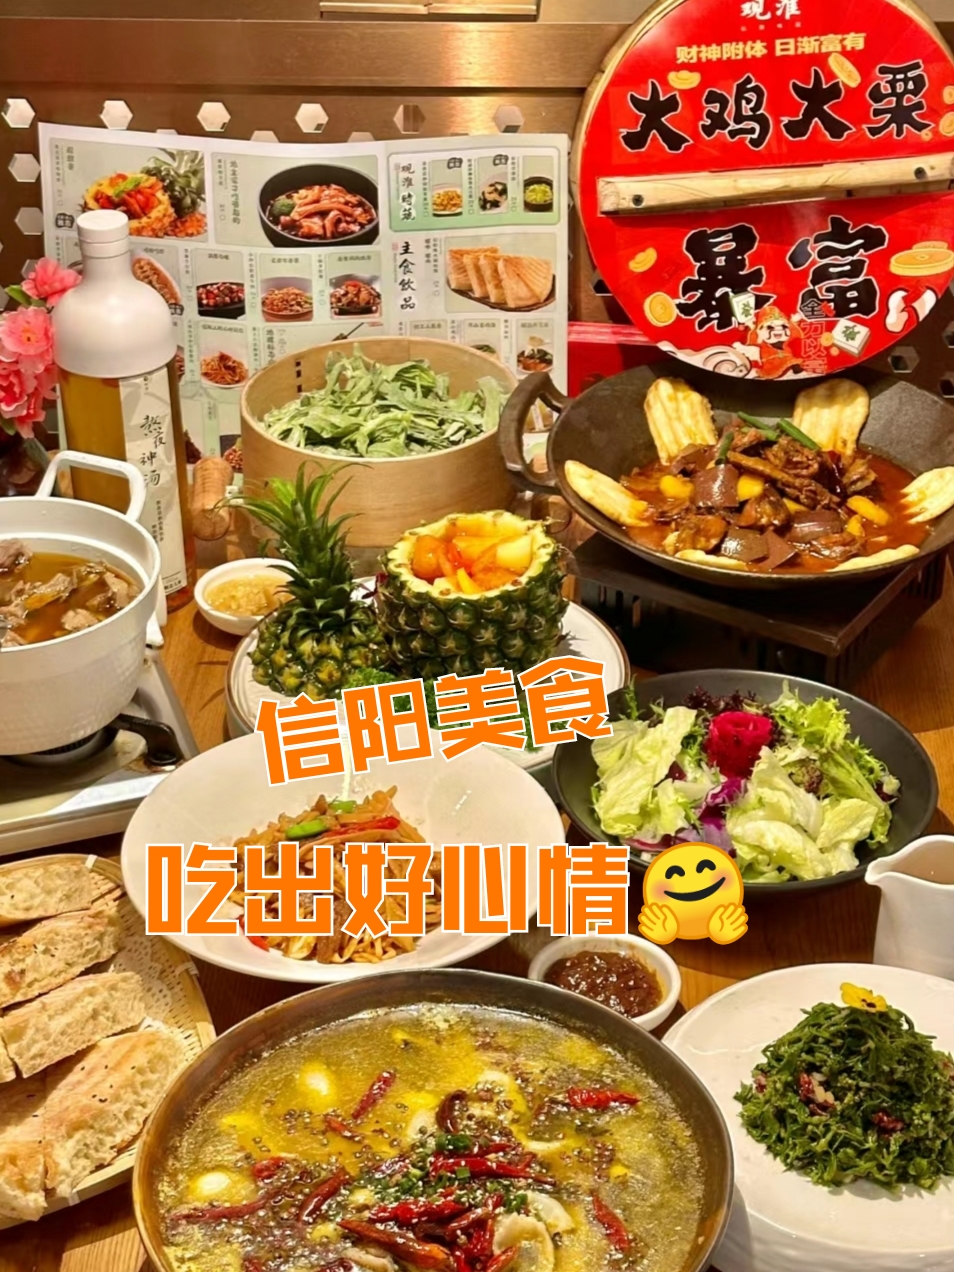 近期在郑州吃得最舒服的一顿…… 信阳菜咋这么好吃啊！吃到这么正宗的信阳菜，真的太幸福了！··… #郑